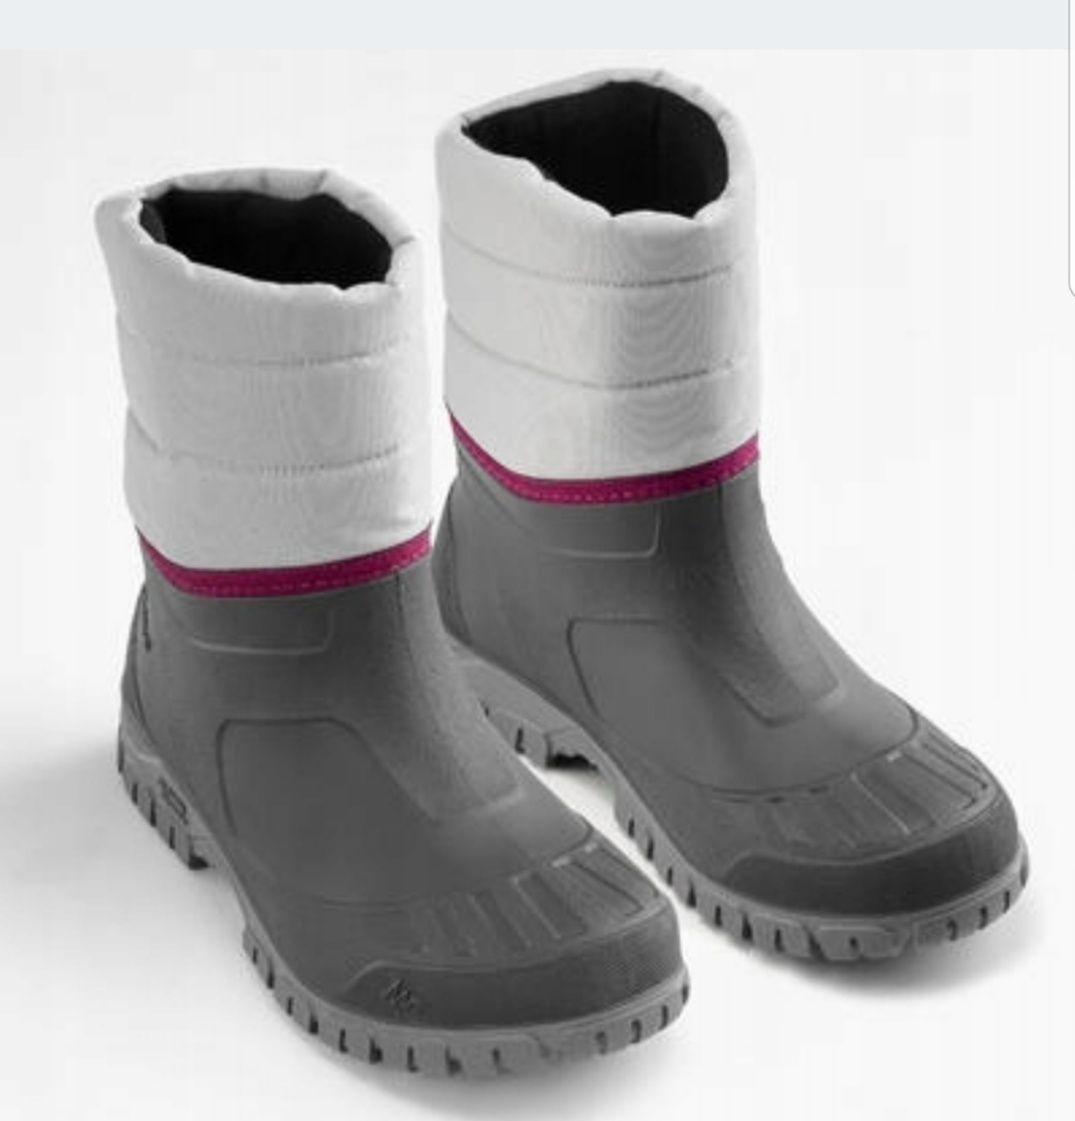 Buty śniegowce turystyczne zimowe wodoodporne kalosze